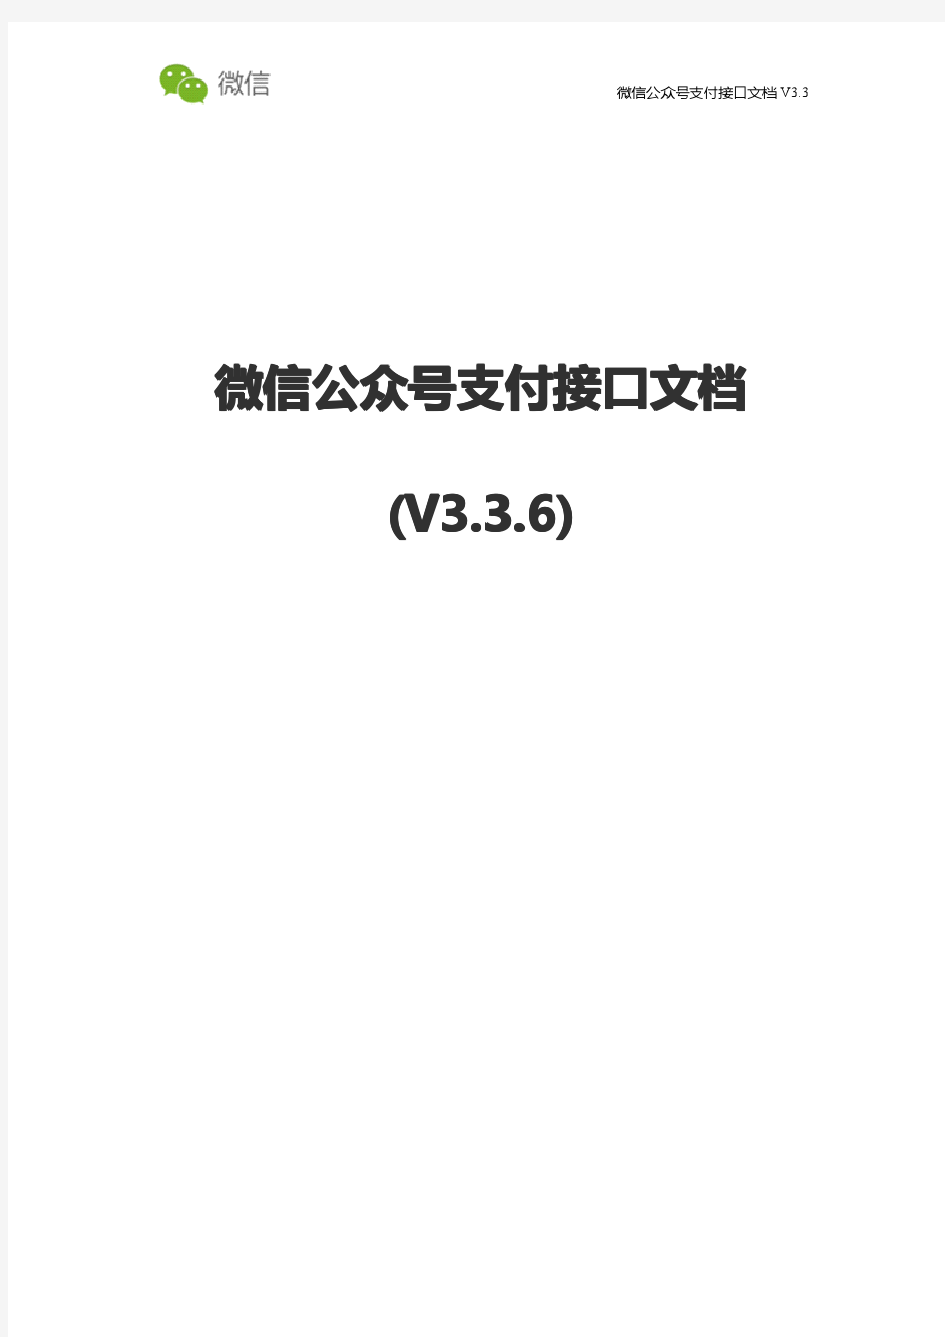 【微信支付】微信公众号支付接口文档V3.3.6